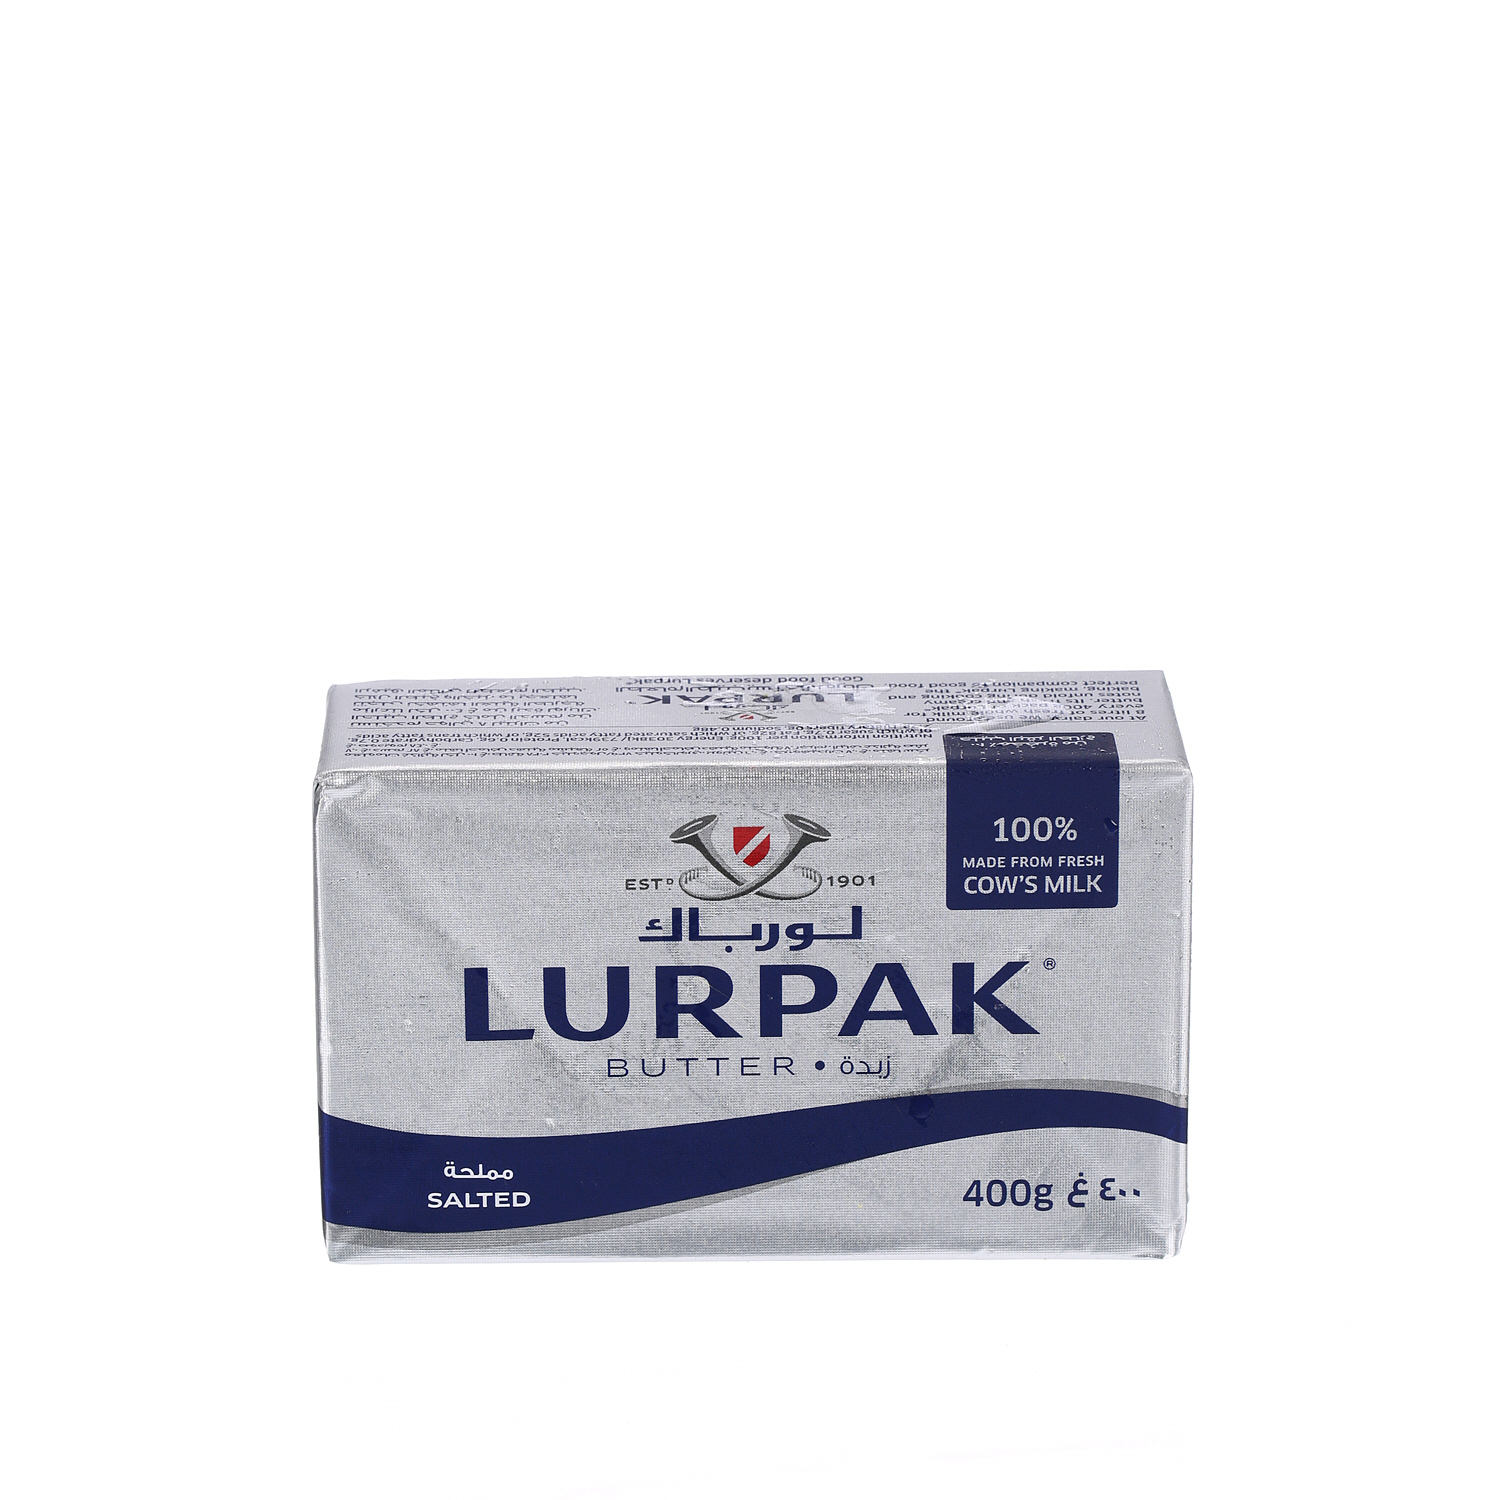 Lurpak Butter Salted 400 g